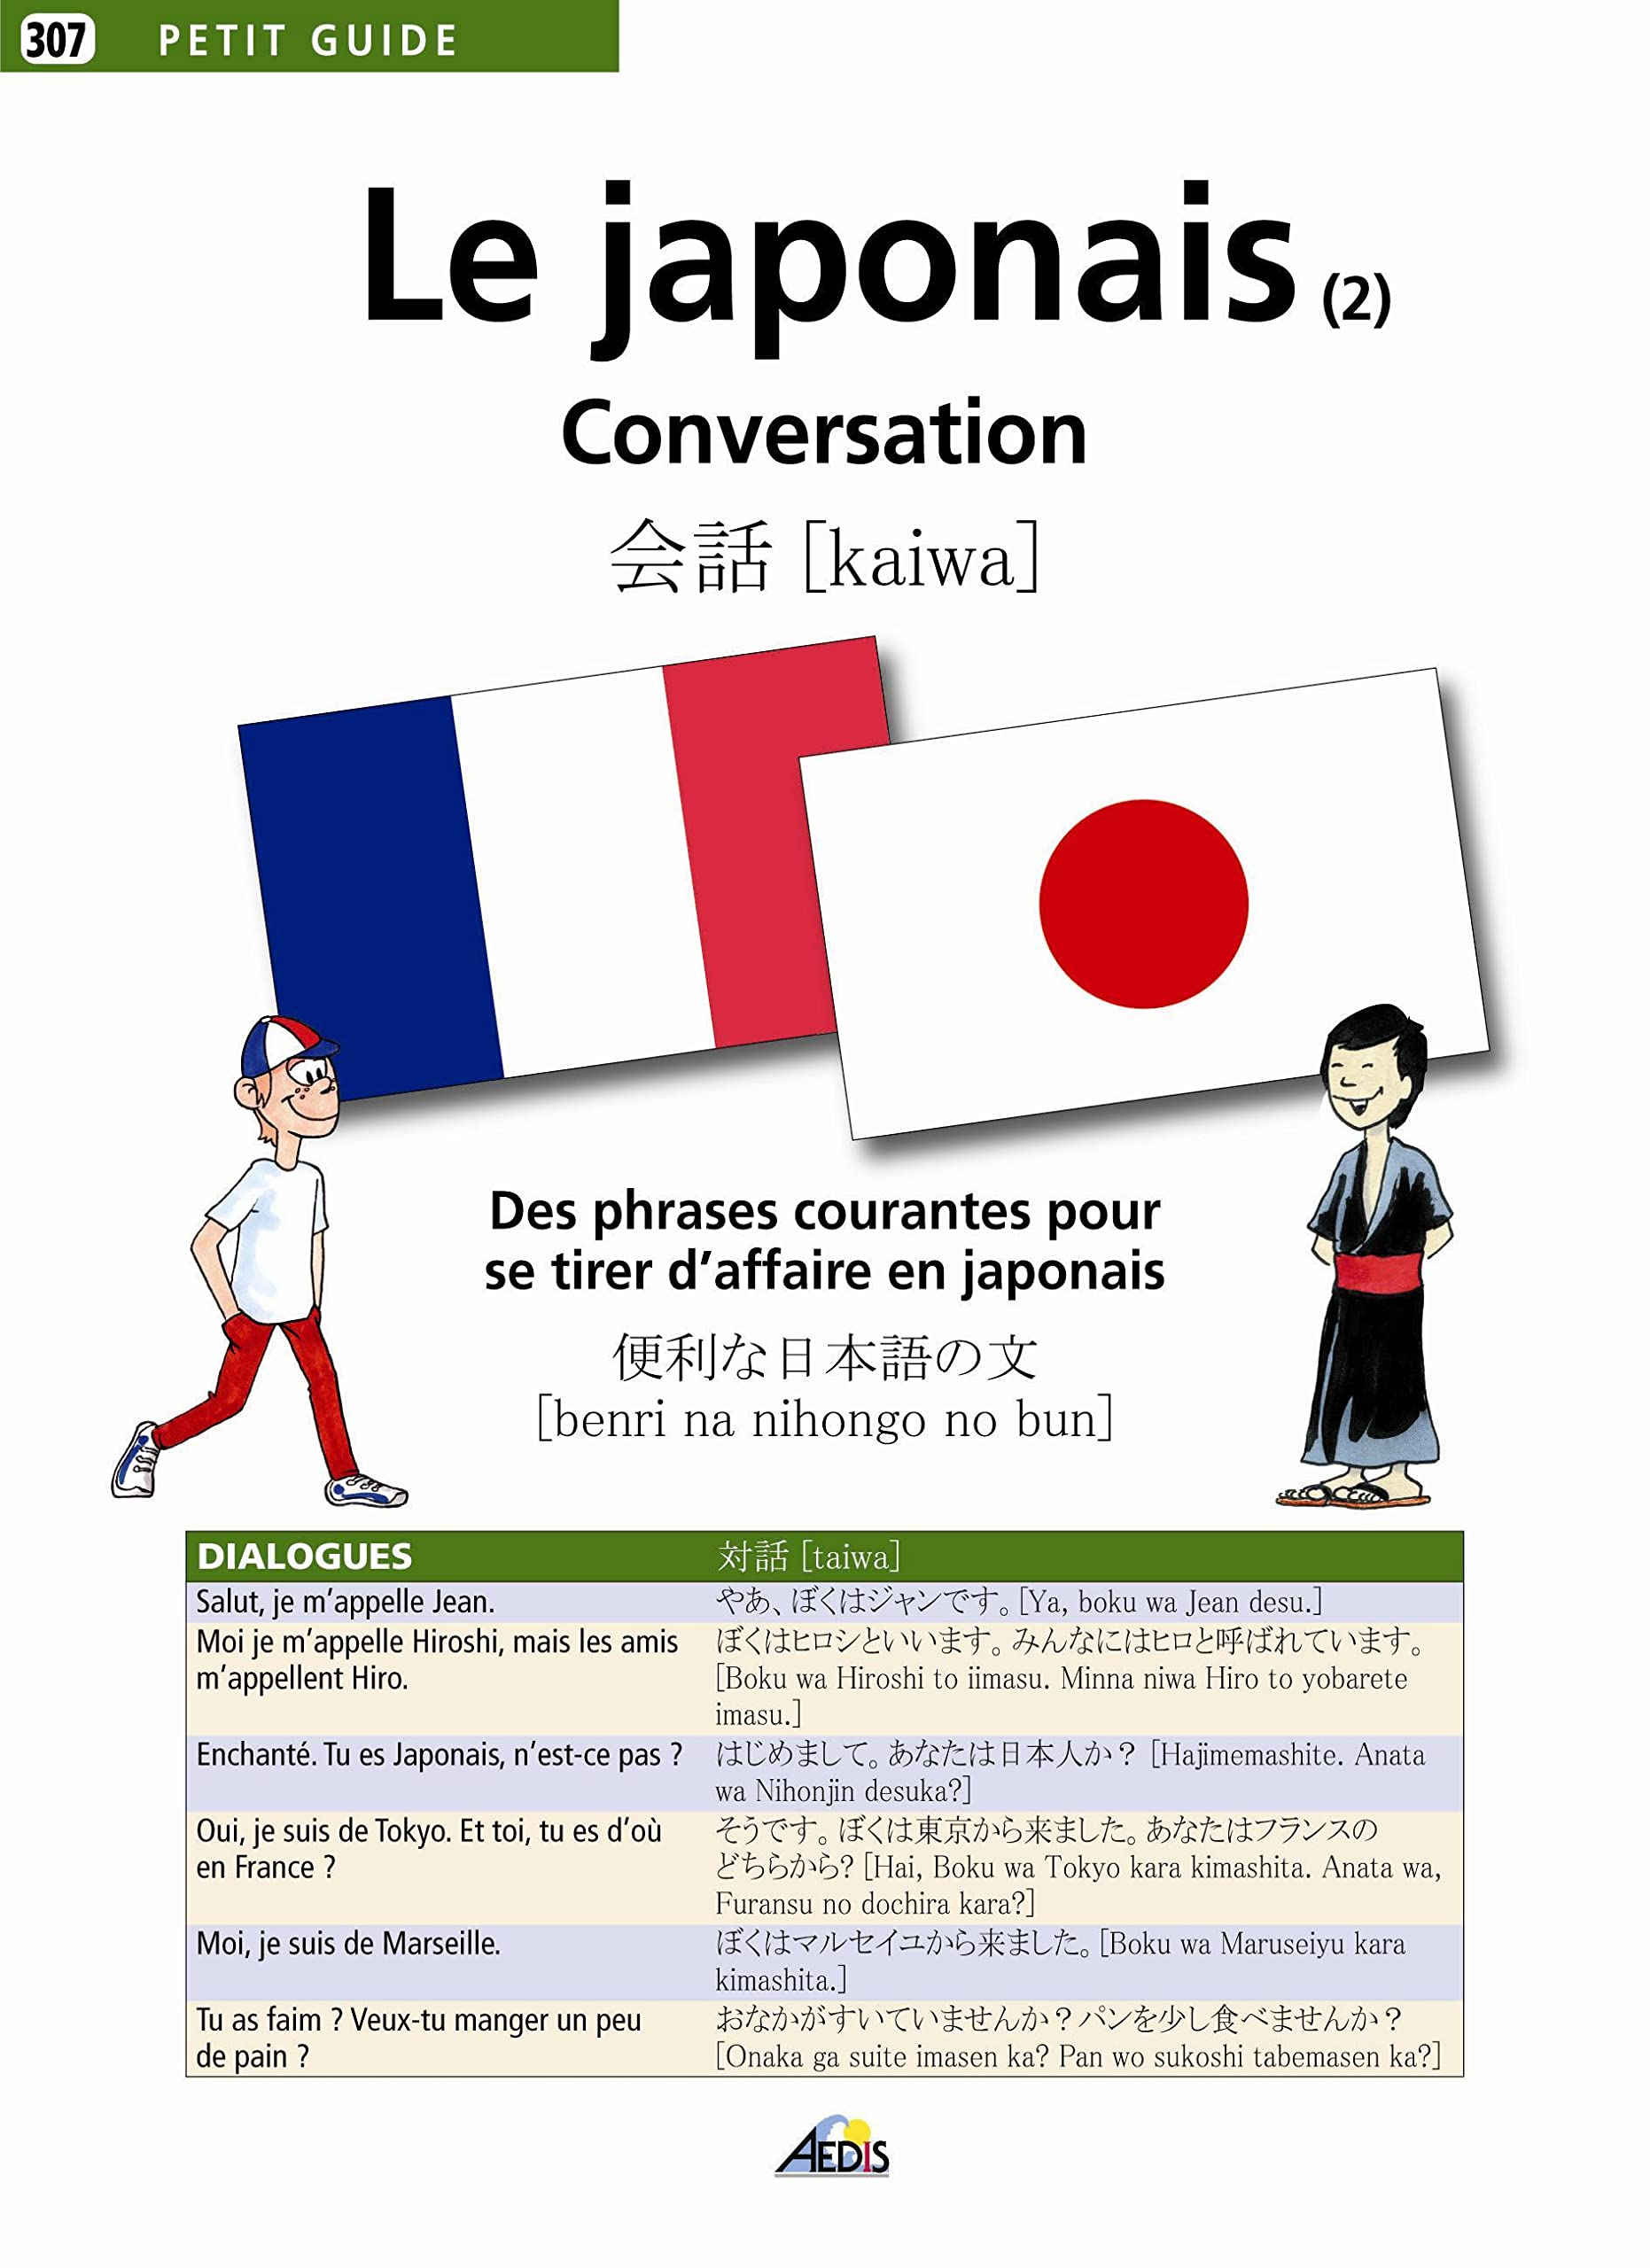 Le japonais : conversation